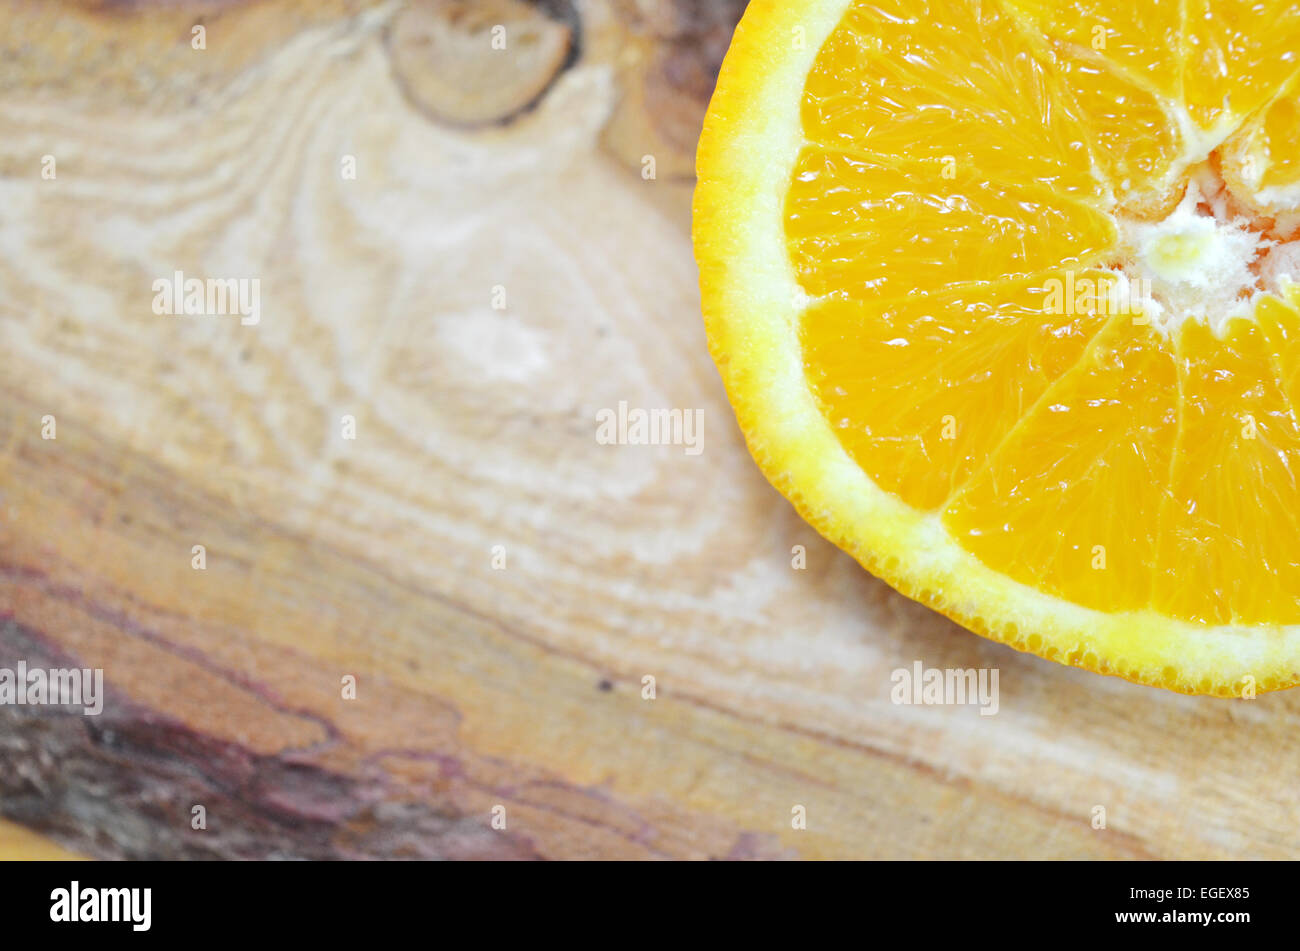 La mitad de una naranja de cerca en una plancha Foto de stock